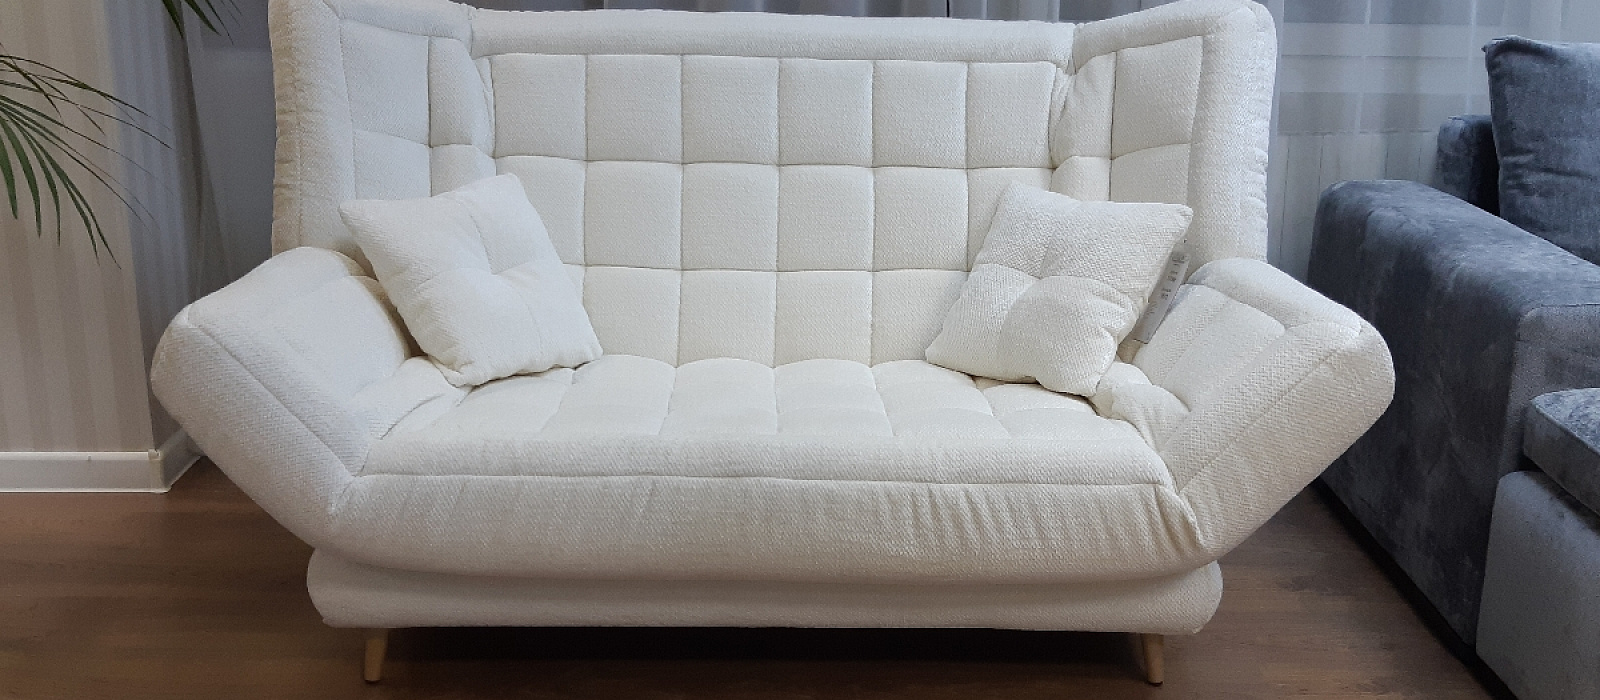 Купить прямой диван «Ковер-самолет диван-кровать» в интернет магазине Anderssen - изображение 1